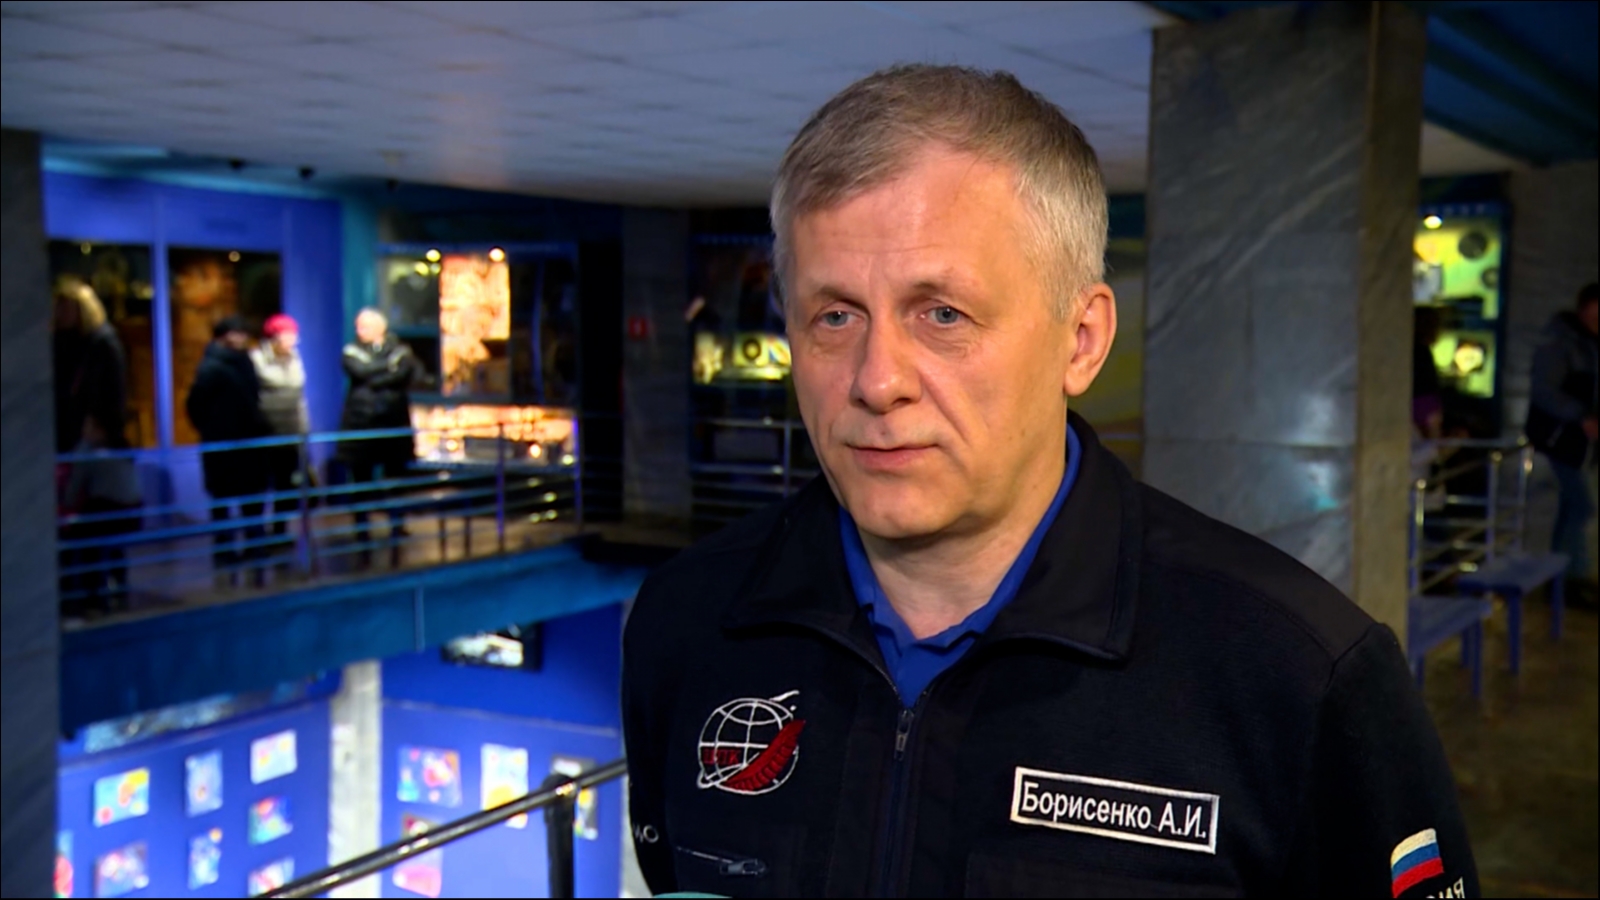 В Мурманске пройдет встреча с космонавтом Борисенко